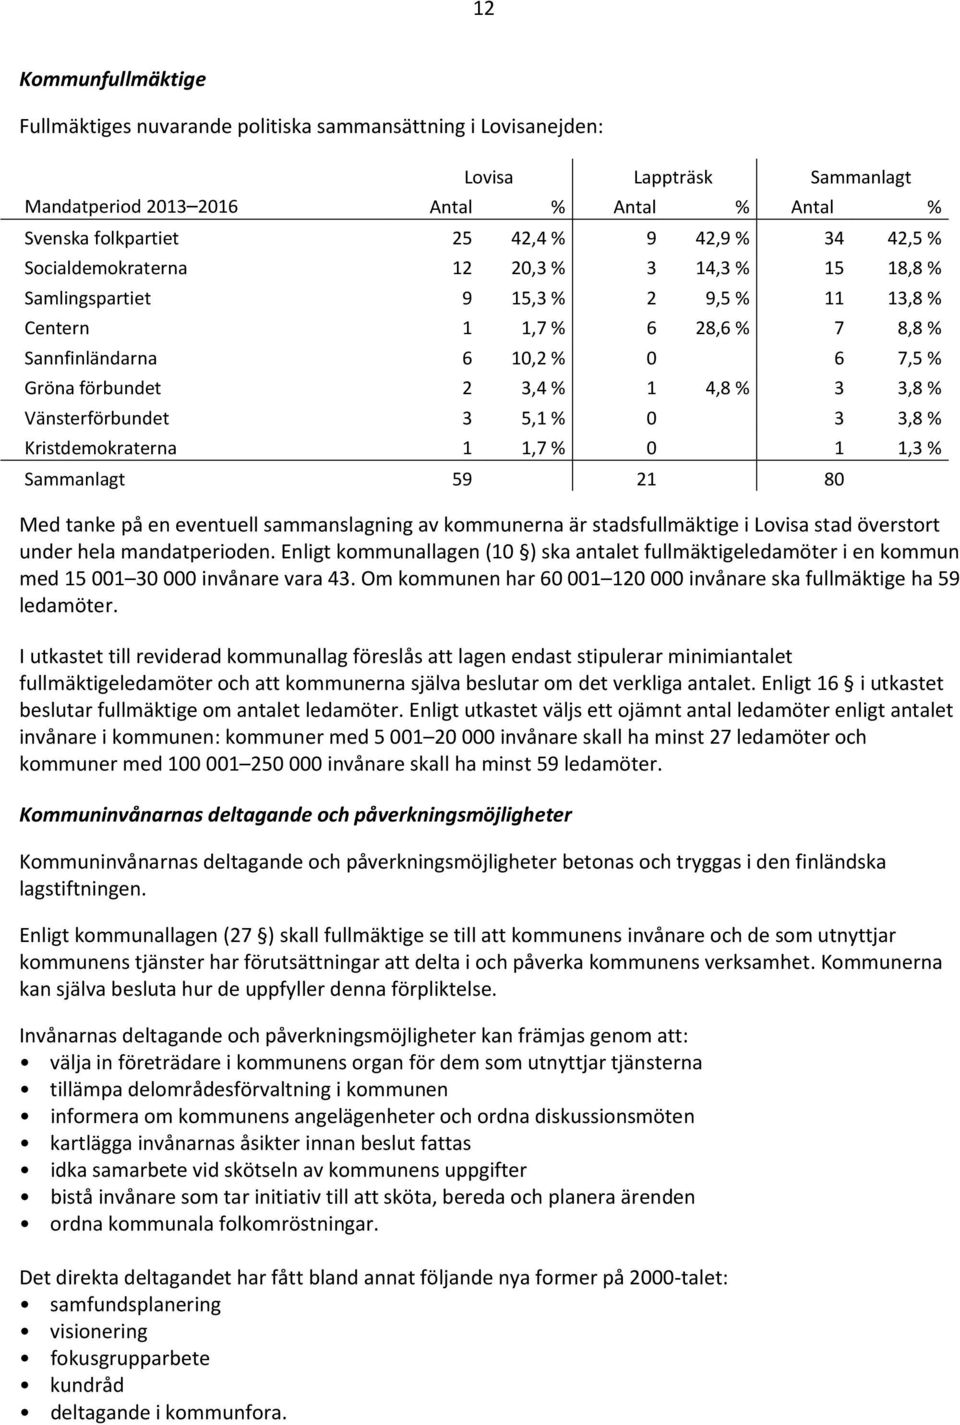 % 3 3,8 % Vänsterförbundet 3 5,1 % 0 3 3,8 % Kristdemokraterna 1 1,7 % 0 1 1,3 % Sammanlagt 59 21 80 Med tanke på en eventuell sammanslagning av kommunerna är stadsfullmäktige i Lovisa stad överstort